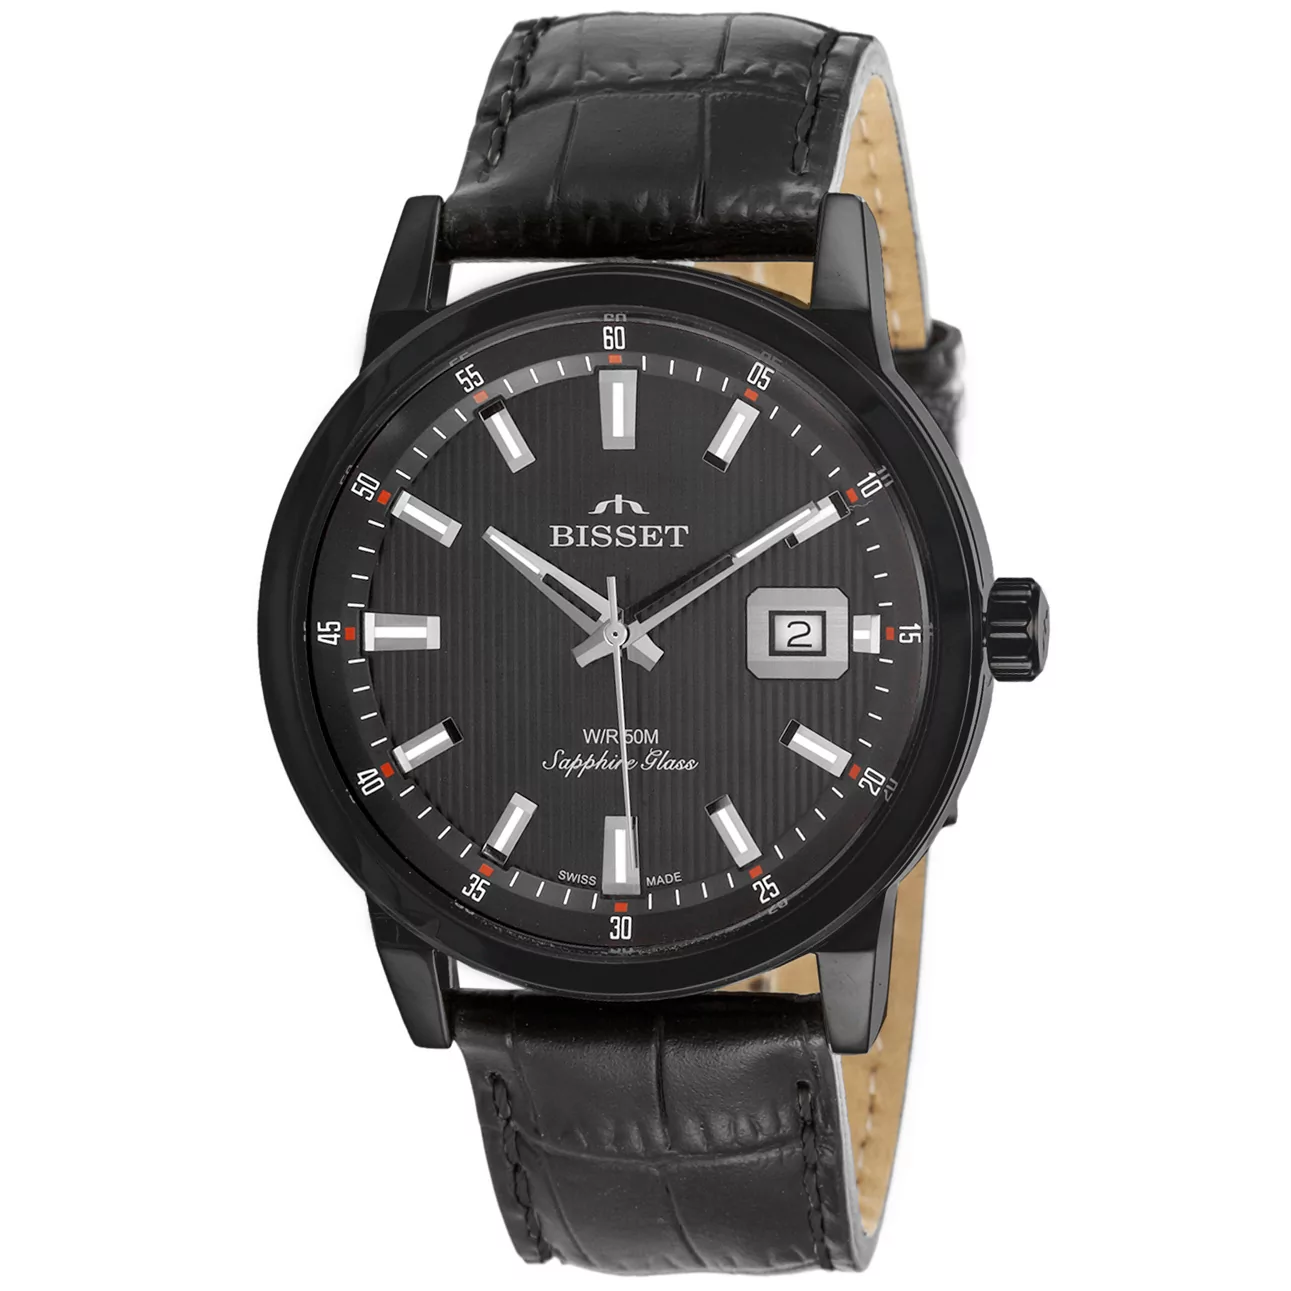 Szwajcarski zegarek męski Bisset BSCE62-7A szafirowe szkło